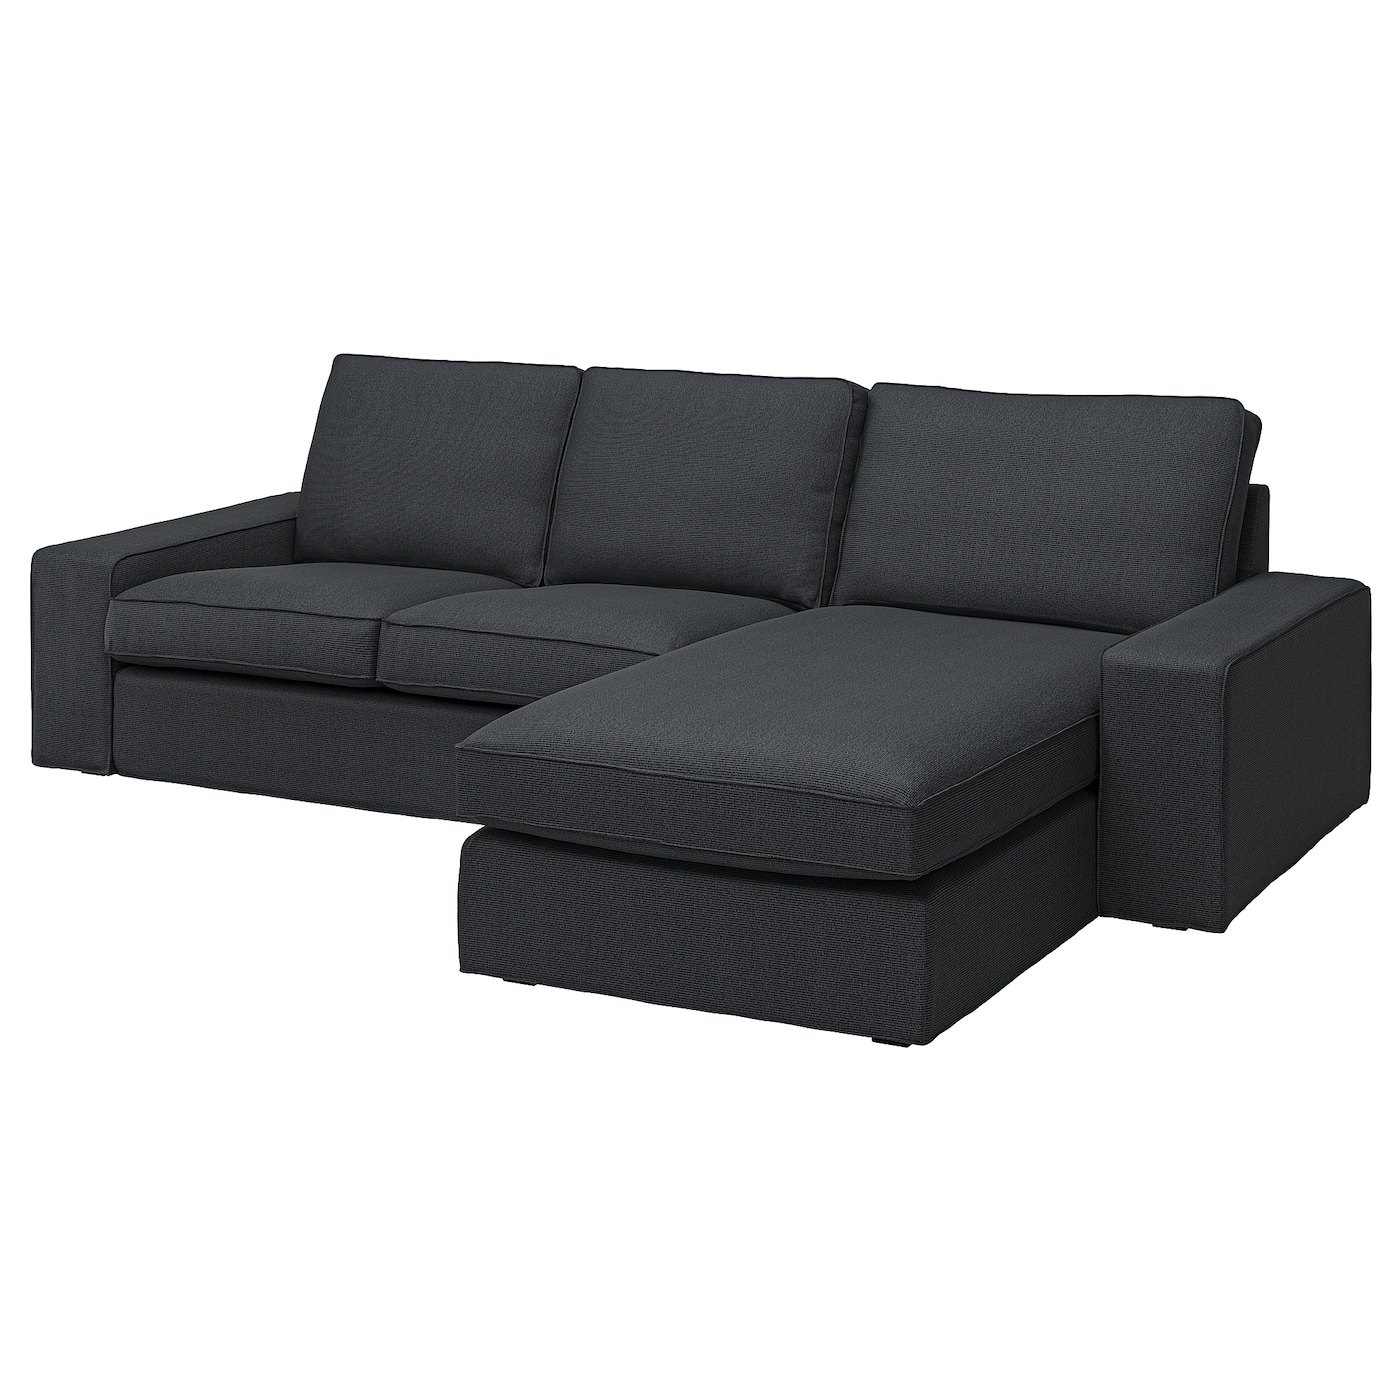 2-местный диван и шезлонг - IKEA KIVIK, 83x95/163x280см, черный, КИВИК ИКЕА